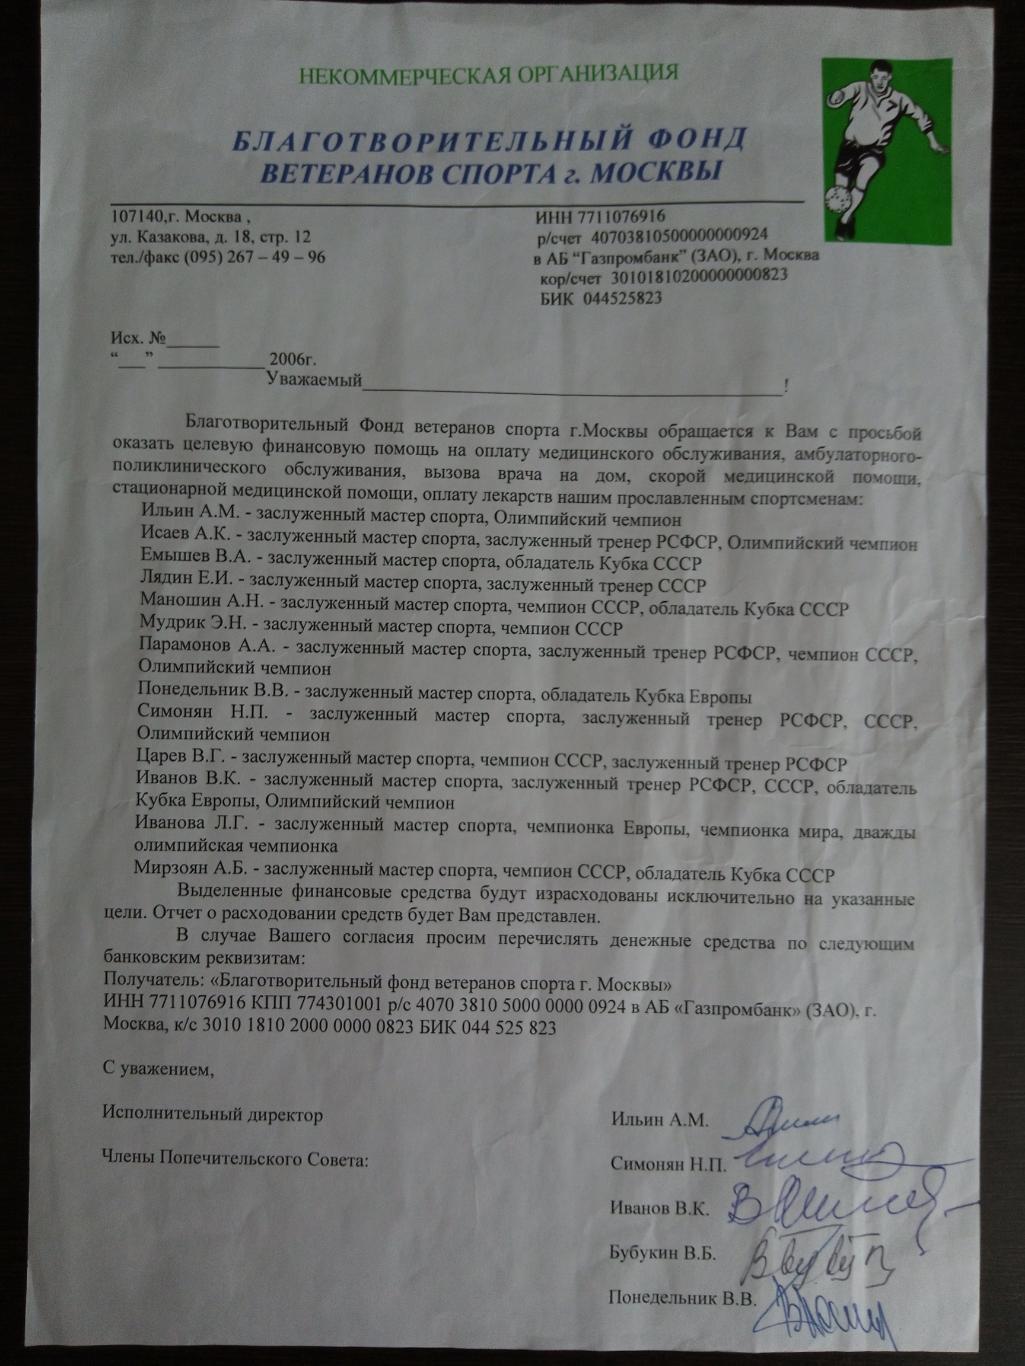 Документ с автографами: Симонян, А. Ильин, Понедельник, В. Иванов, Бубукин